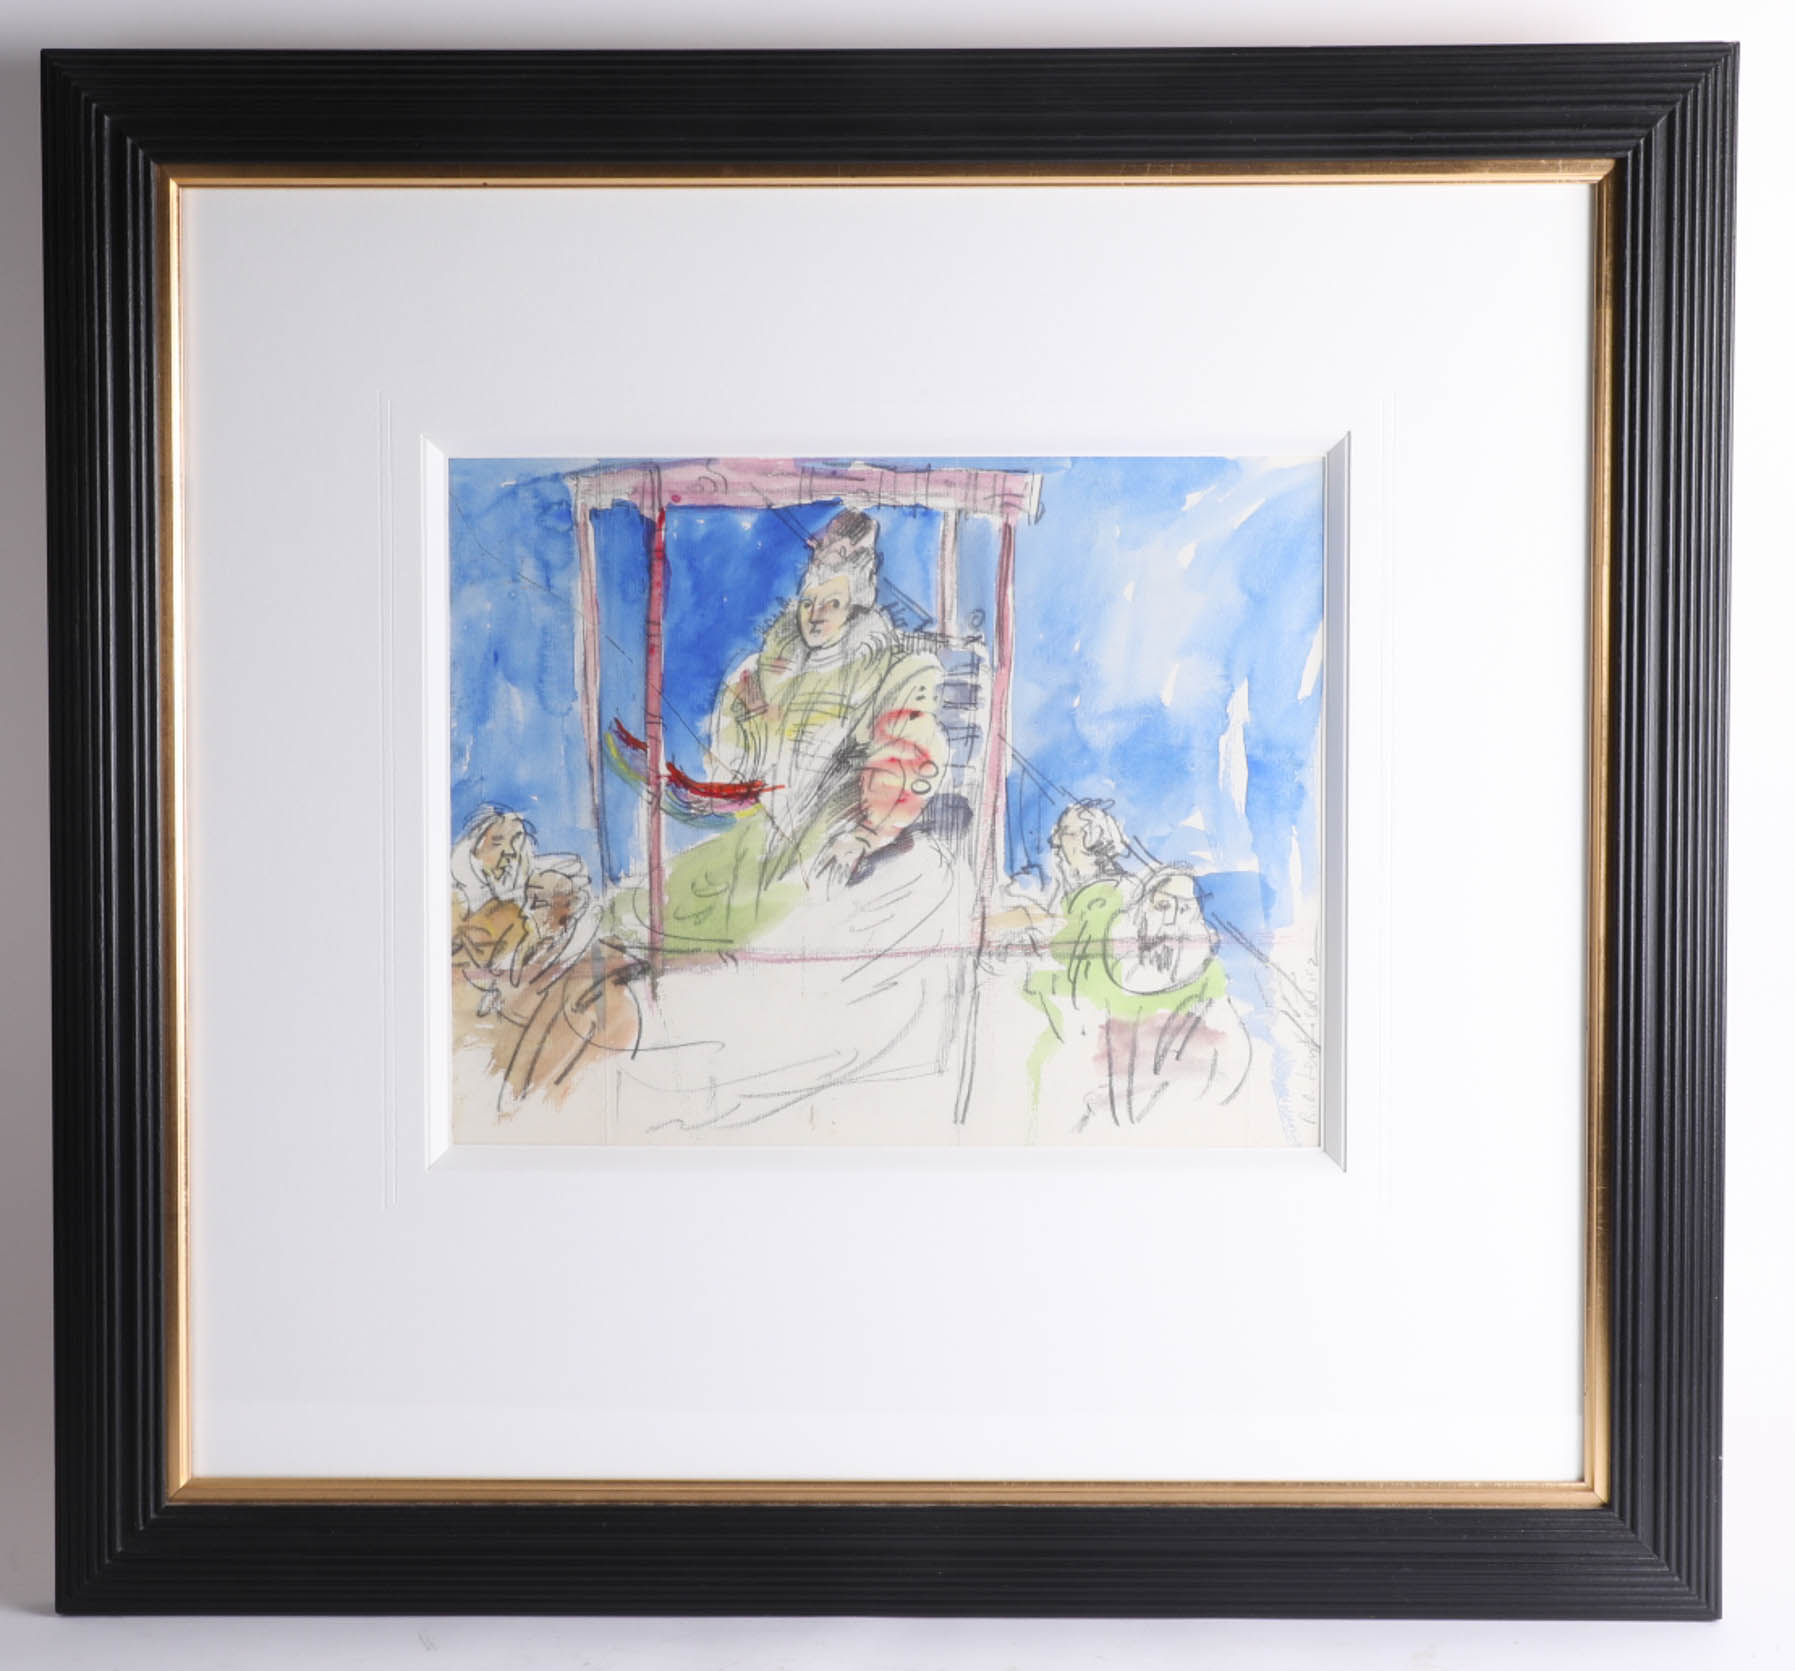 Robert Lenkiewicz (1941-2002) 'Elizabeth Entourage', pencil/watercolour, 36 x 28cm, a preparatory